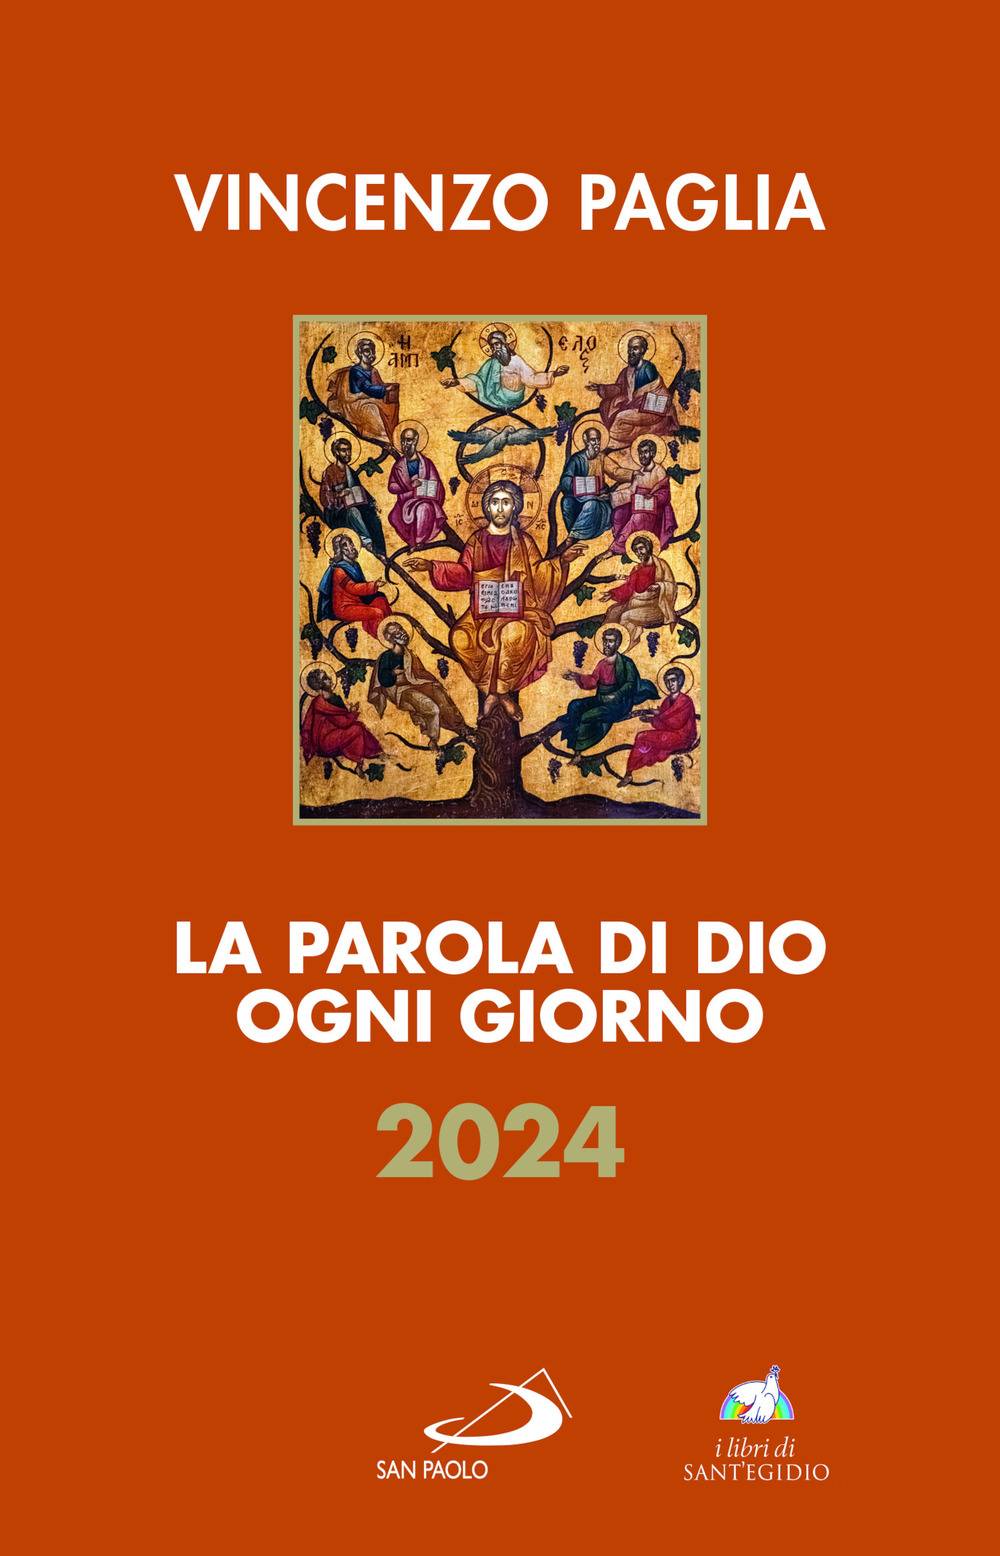 Libri Vincenzo Paglia - La Parola Di Dio Ogni Giorno 2024 NUOVO SIGILLATO, EDIZIONE DEL 30/10/2023 SUBITO DISPONIBILE